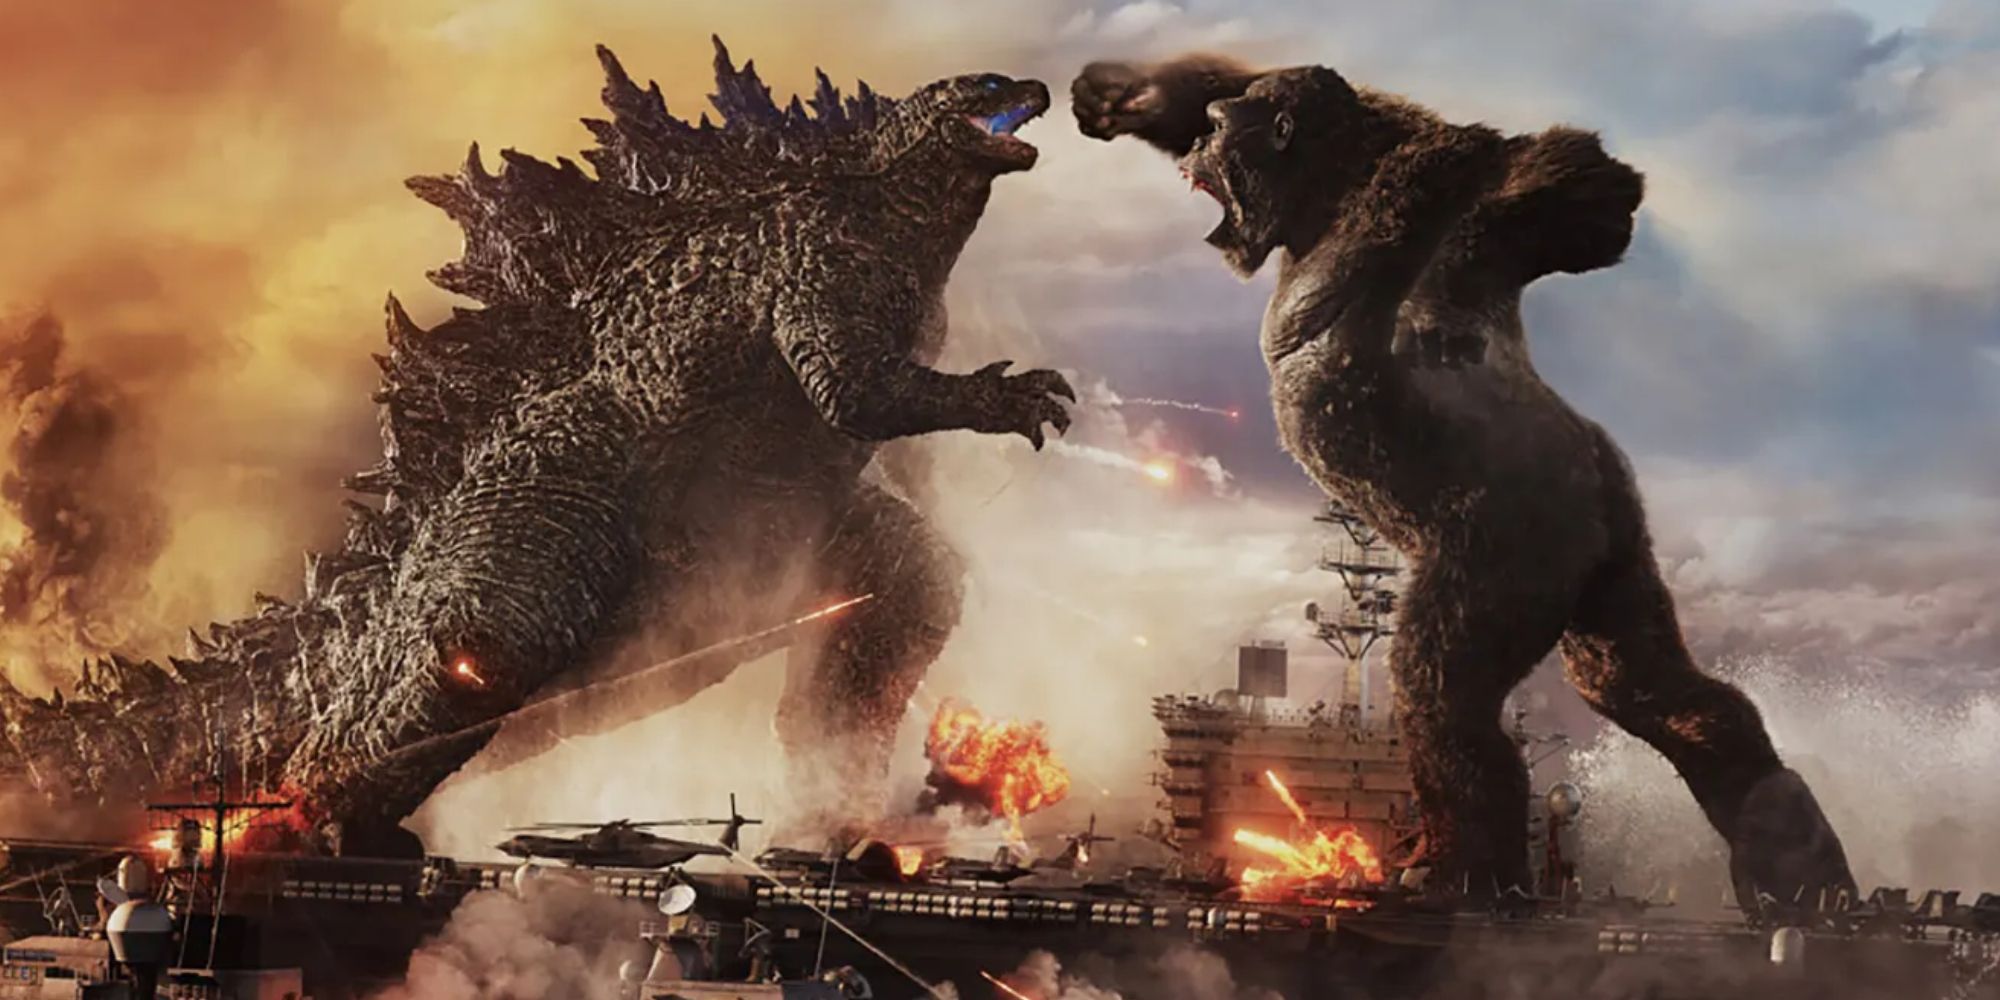 Godzilla and Kong go head to head in Godzilla vs. Kong 